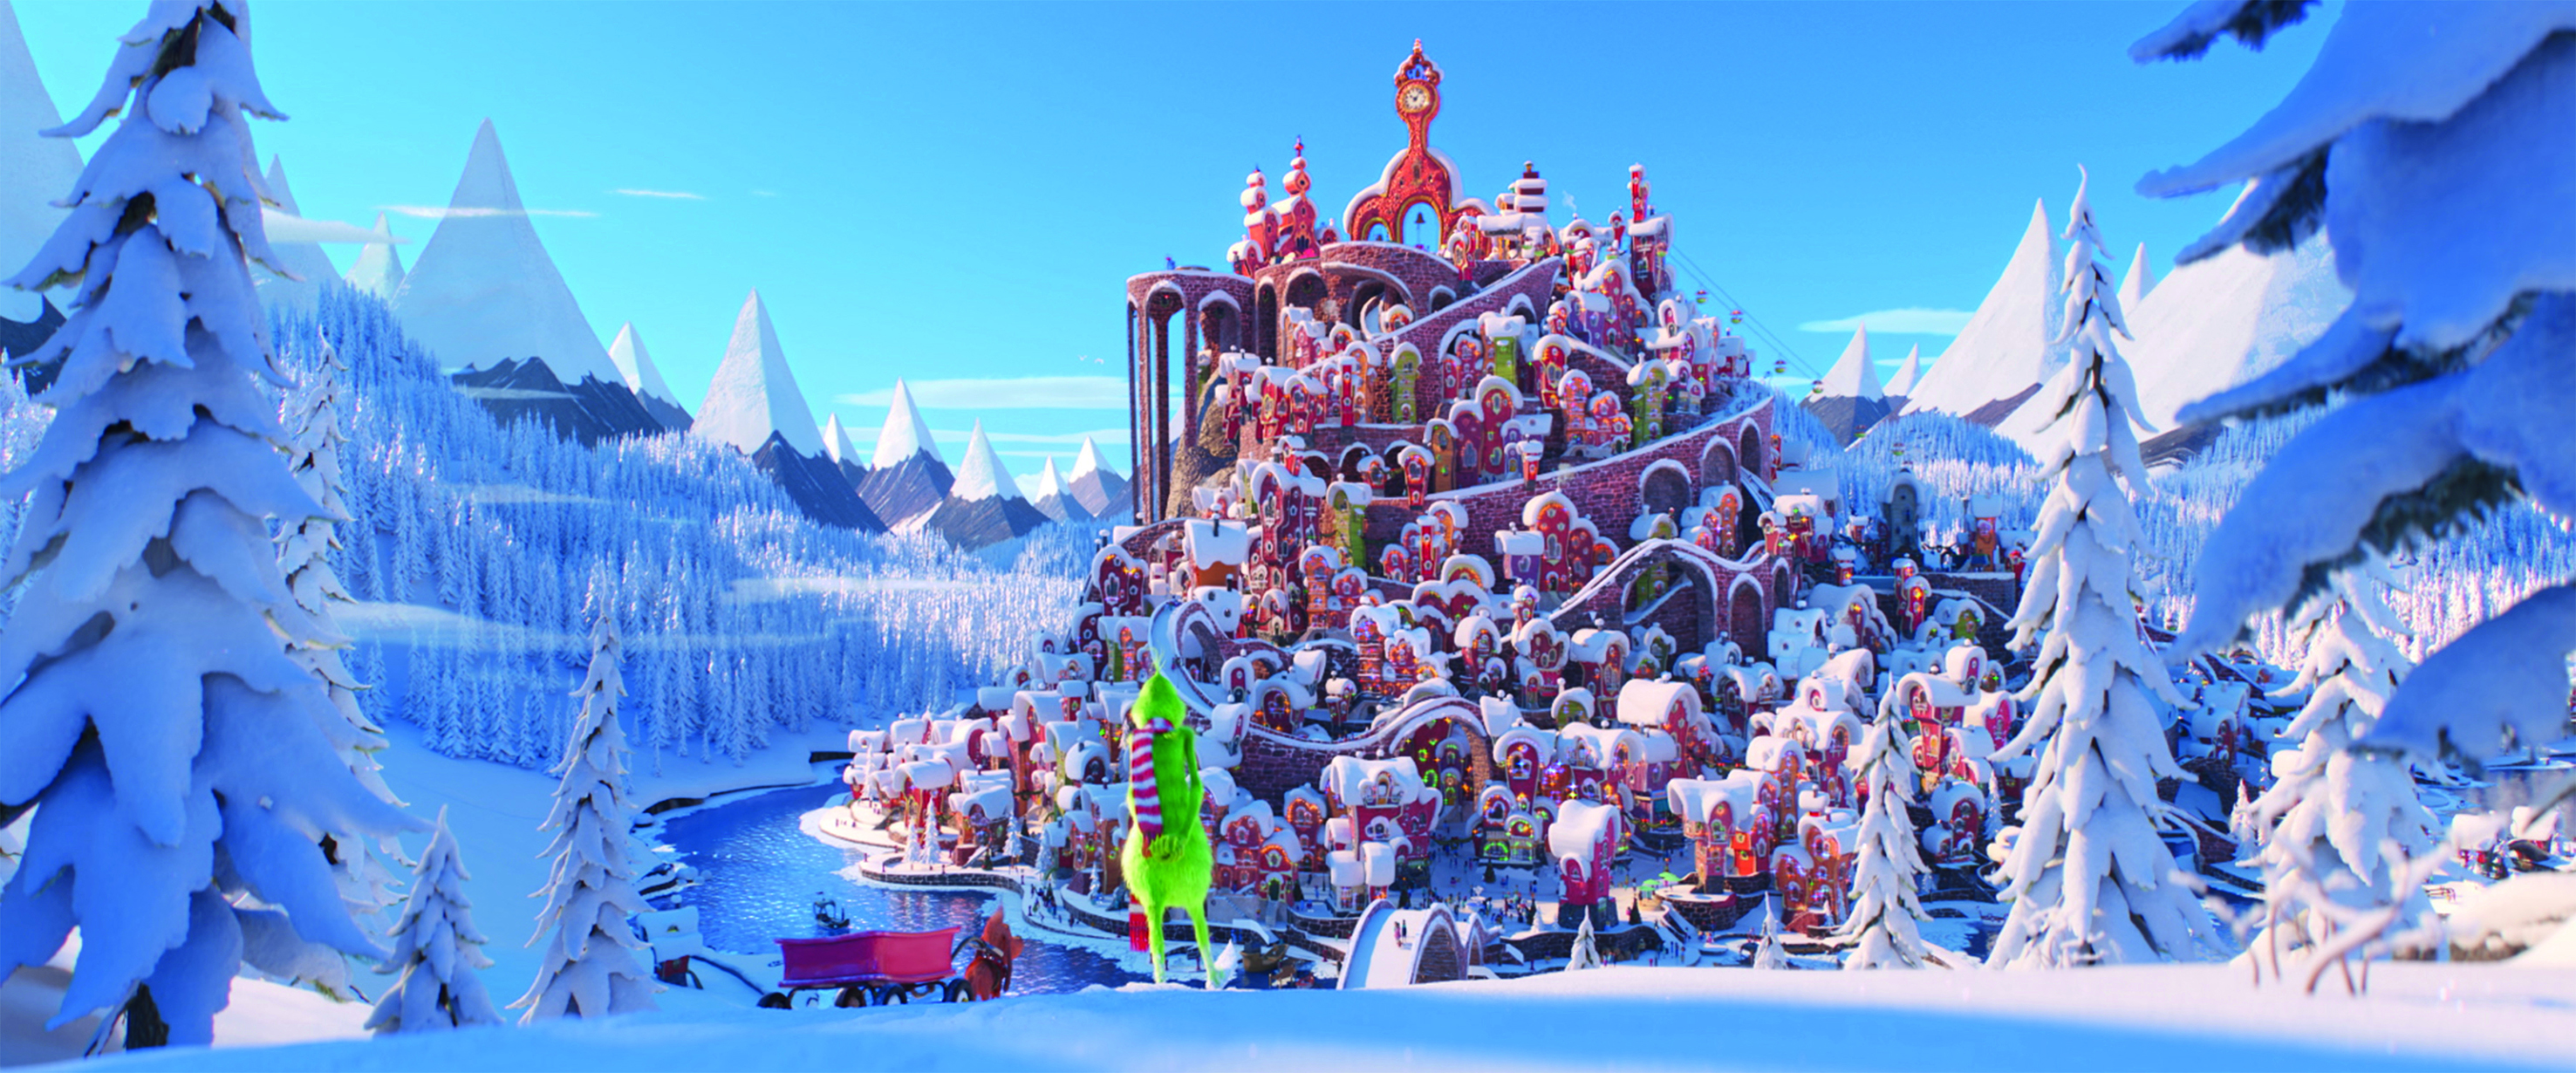 Den tecknade versionen av "Grinchen" visas julhelgen på Kanal 5.